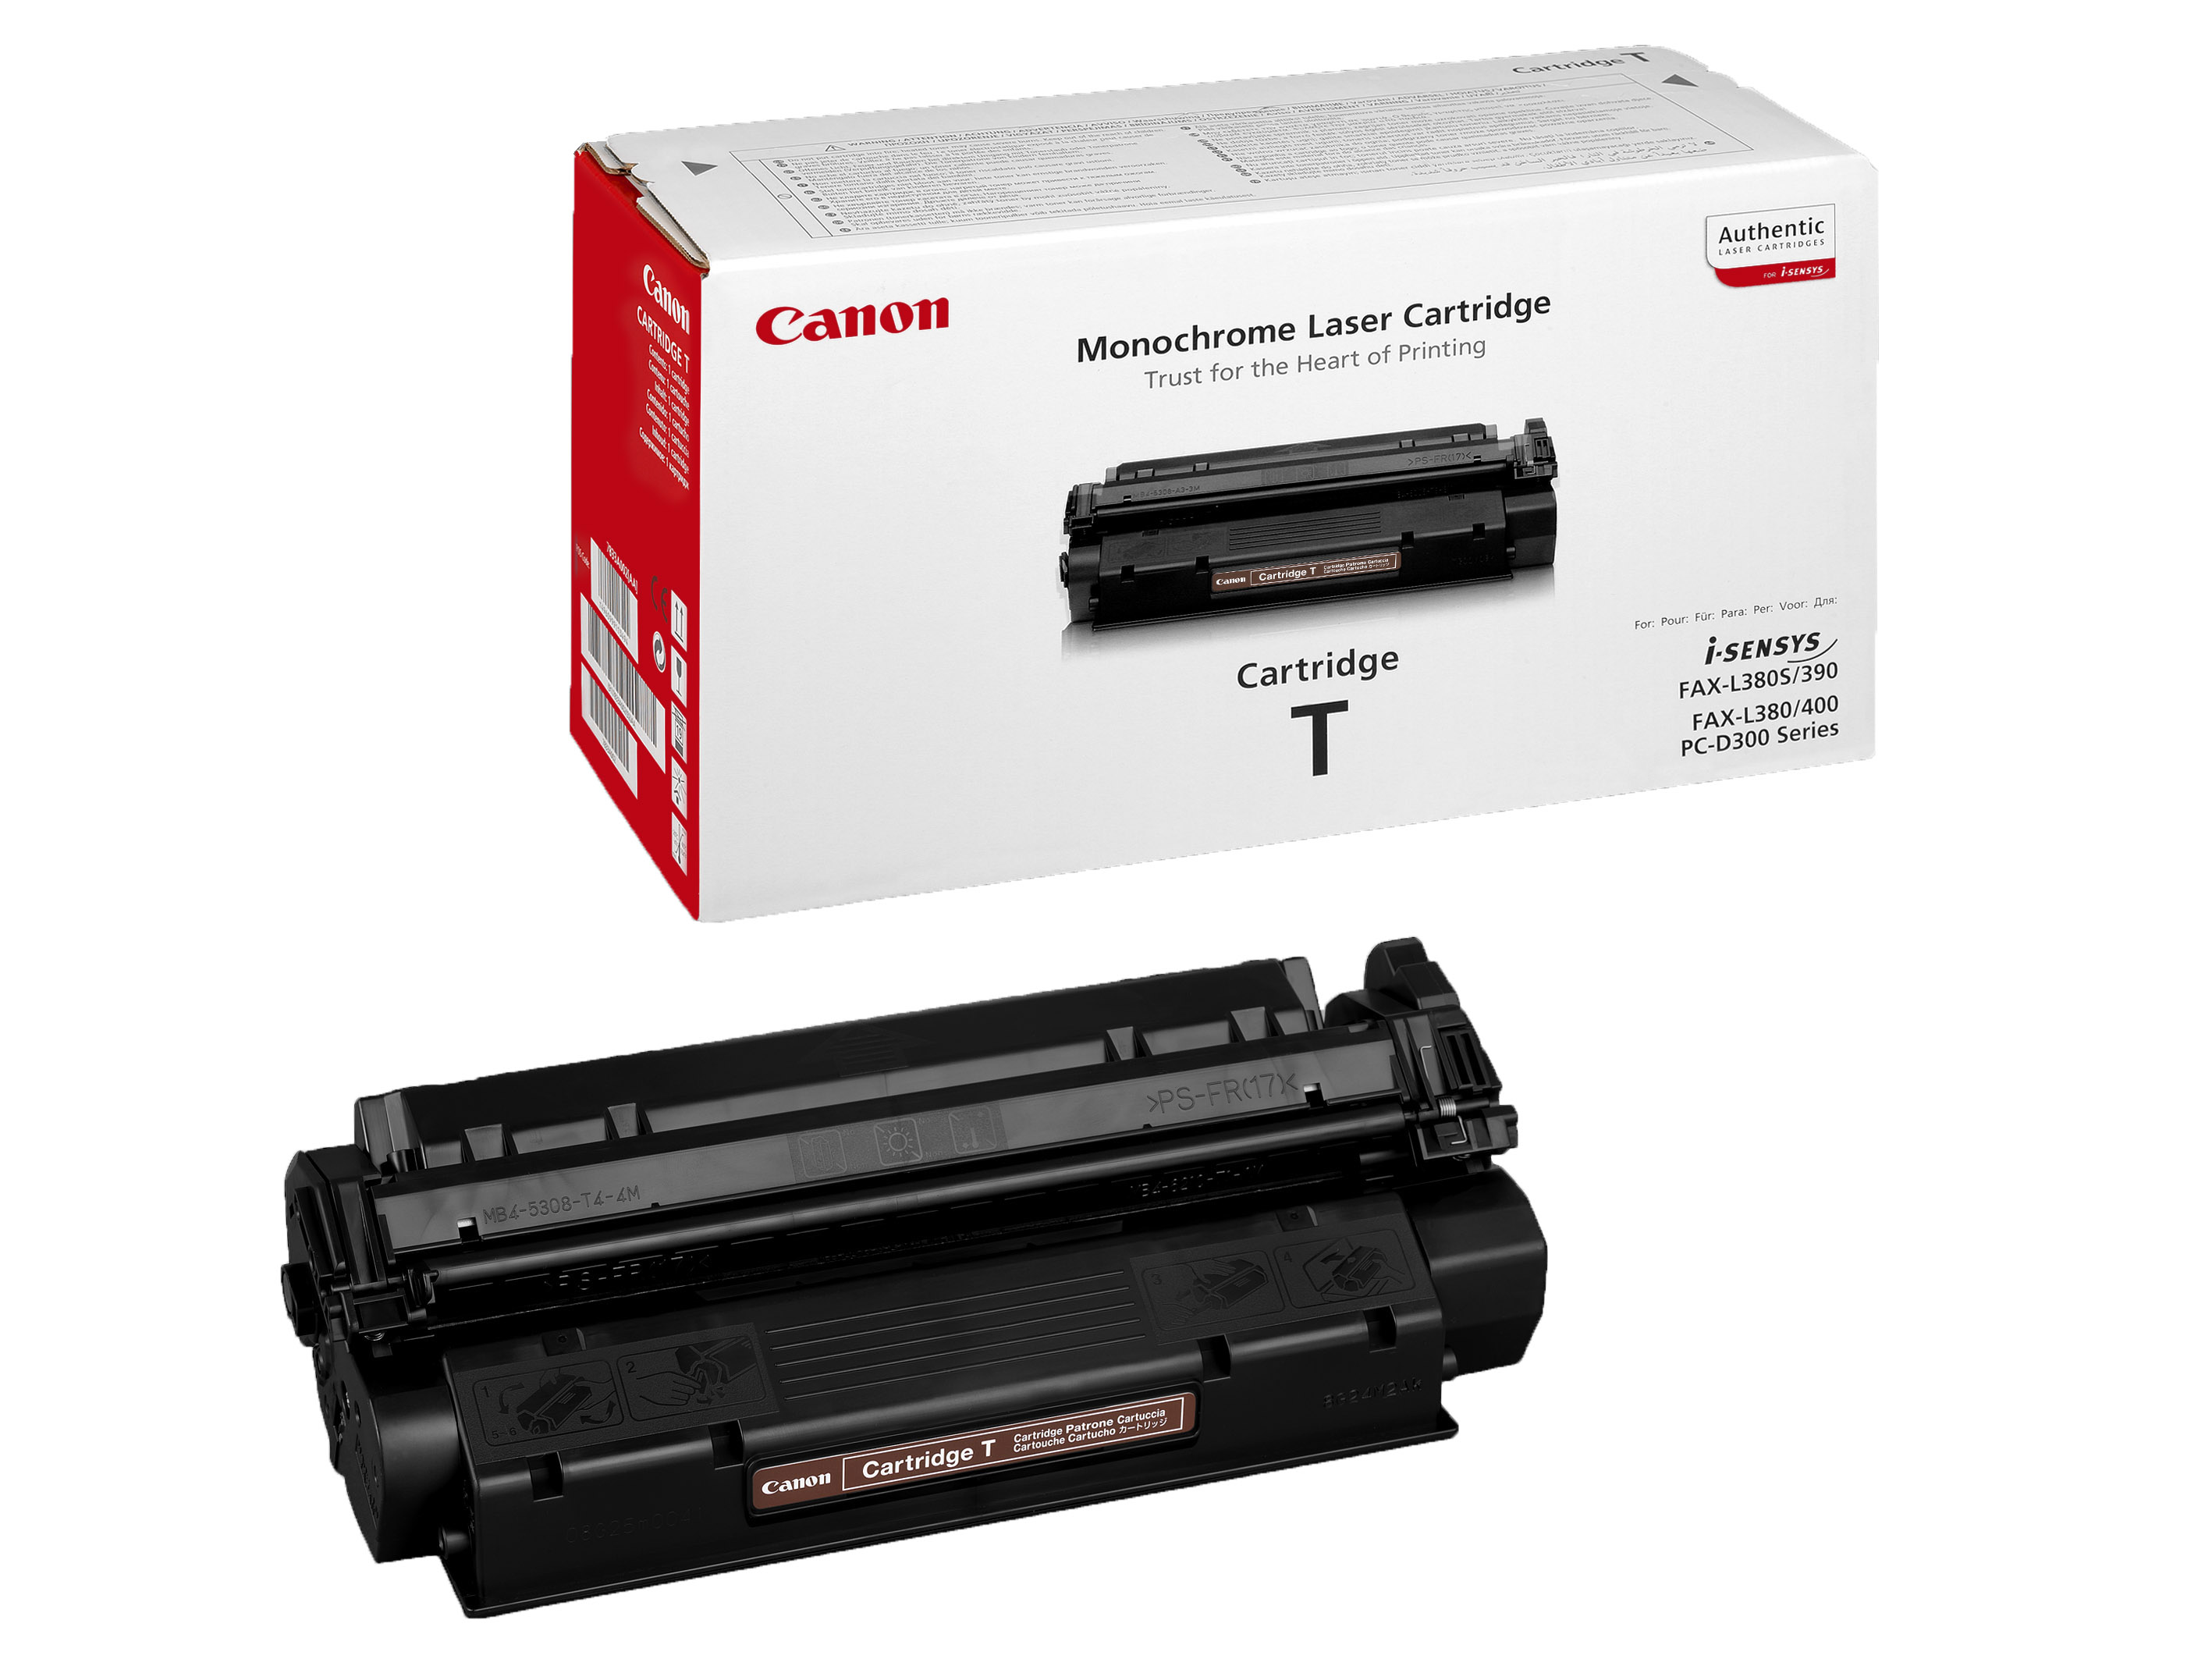 Картридж Canon (Cartridge T) (3,5К) для PC-D320/340/FAX-L380/390/400